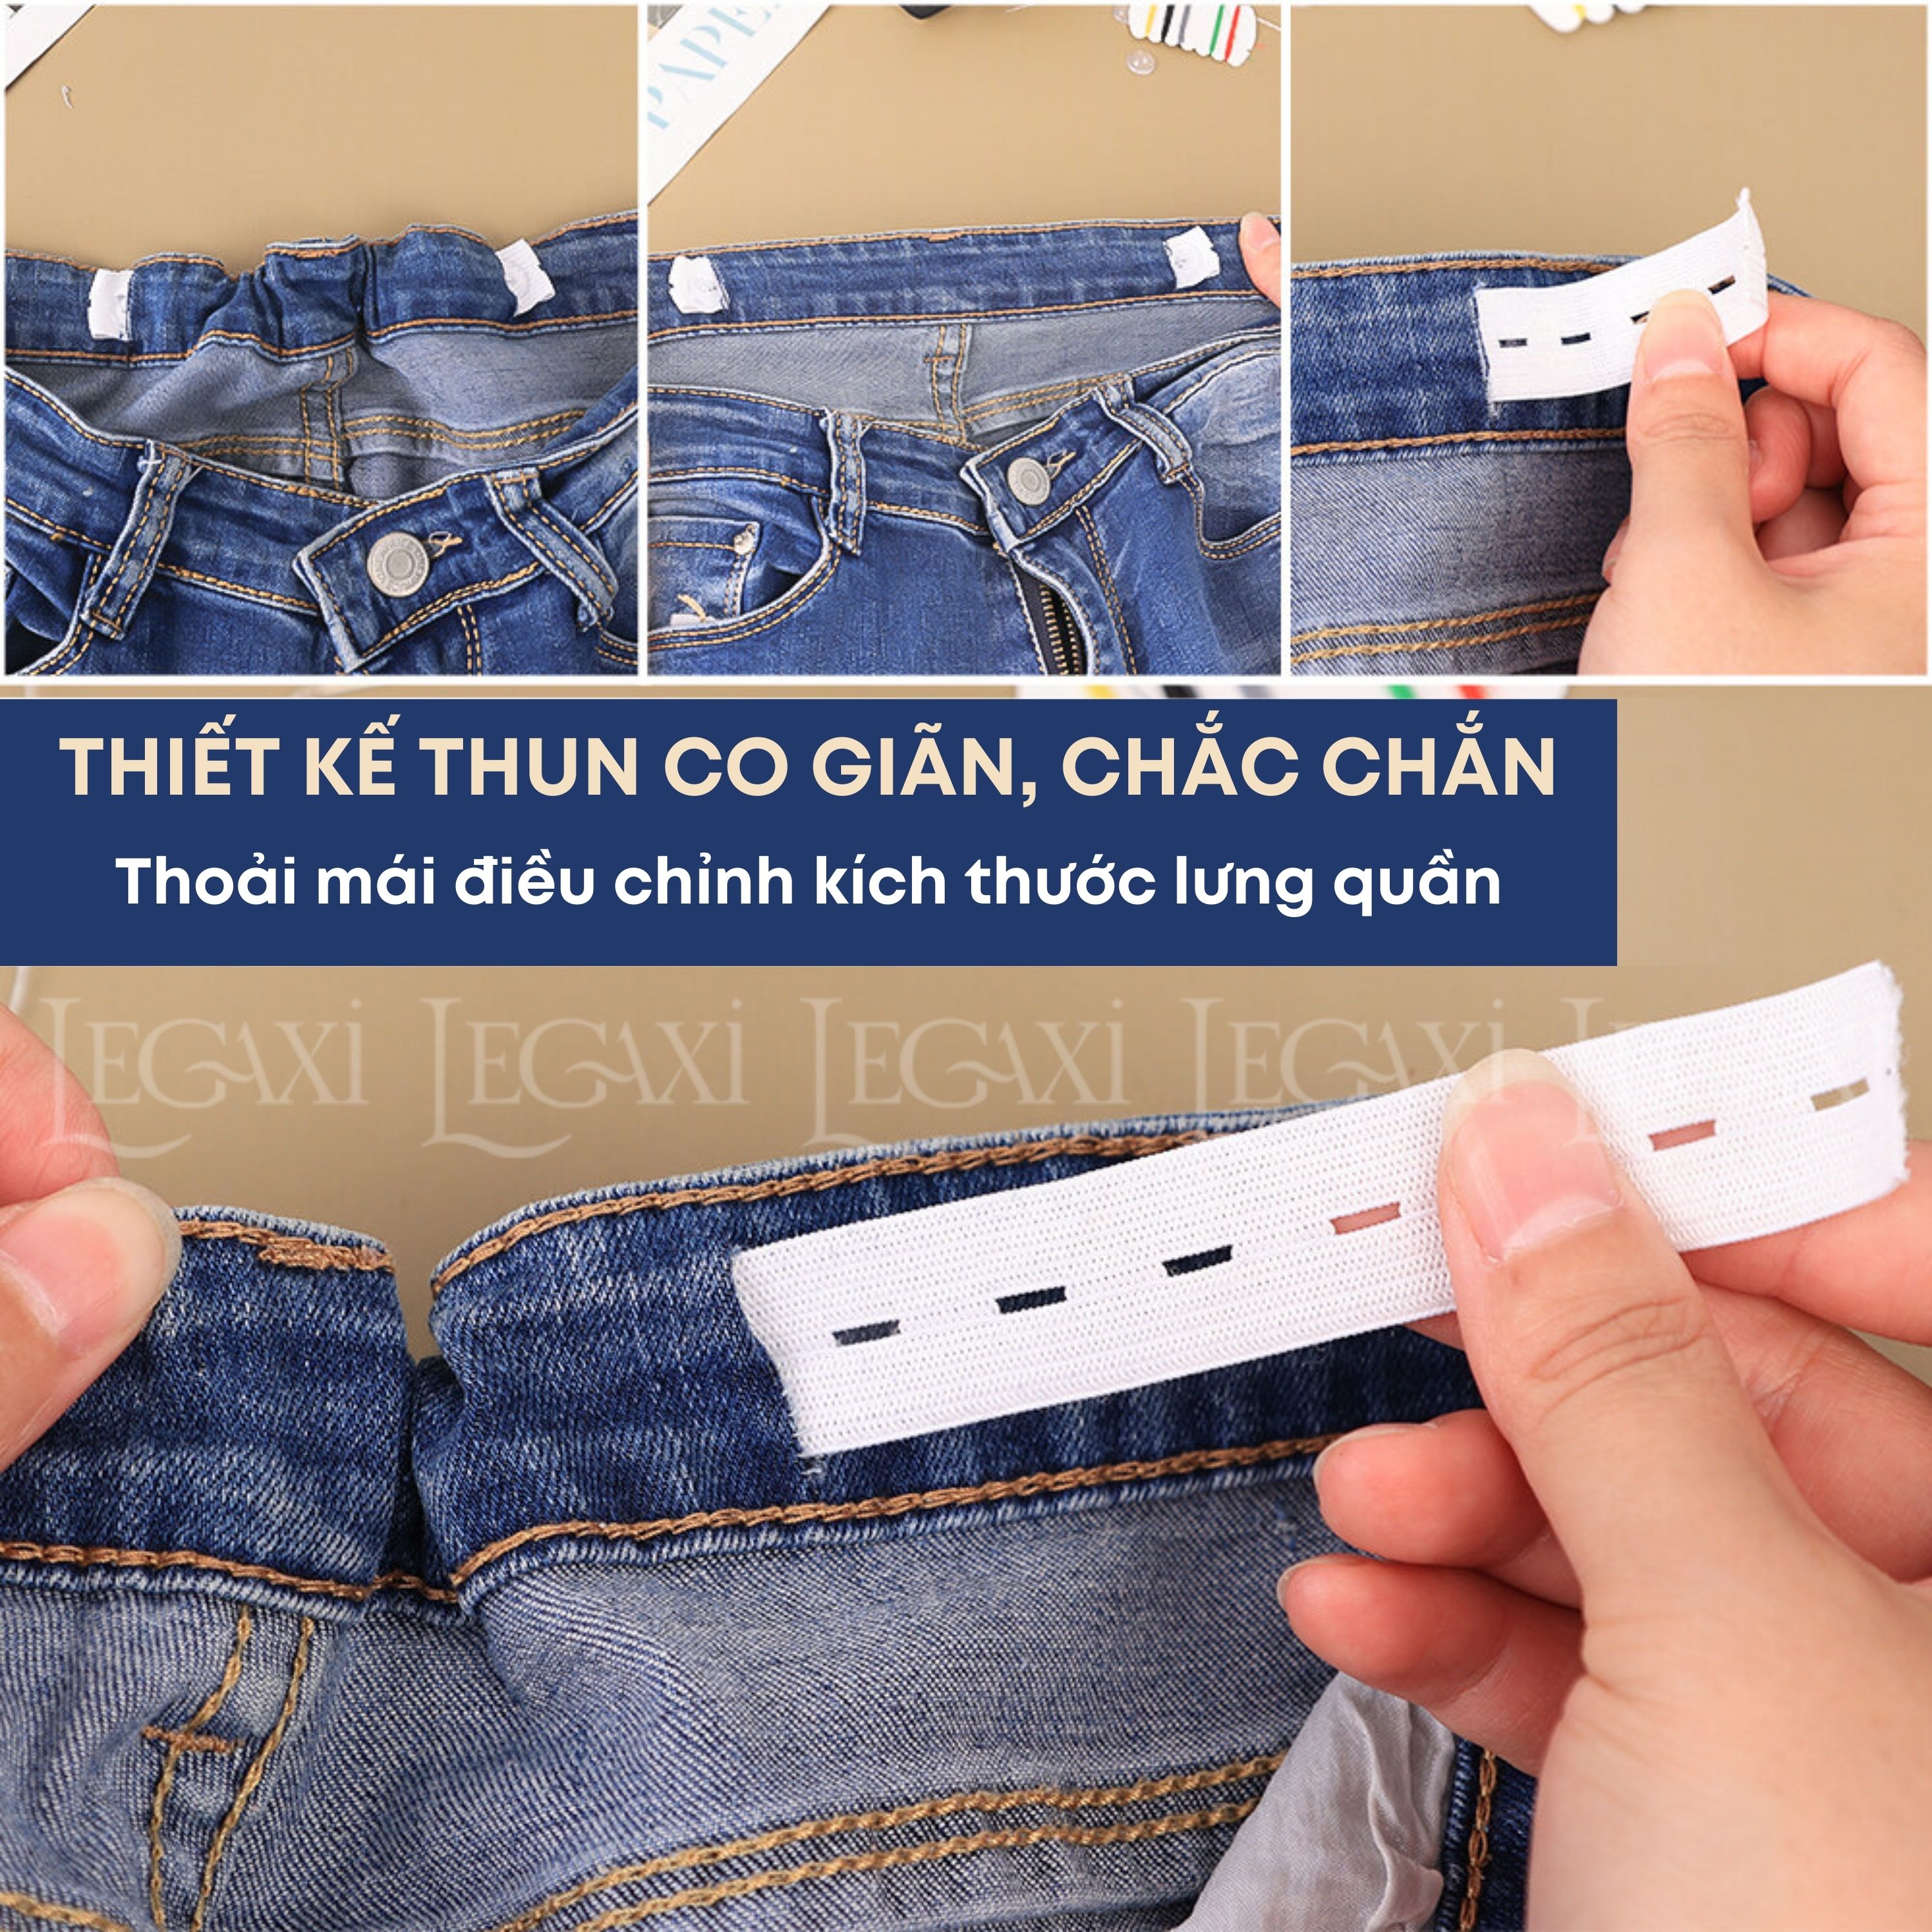 Bộ may vá thu nhỏ thắt lưng, thu hẹp eo quần jean kaki quần lưng thun kim chỉ nút dụng cụ luồn chun Legaxi